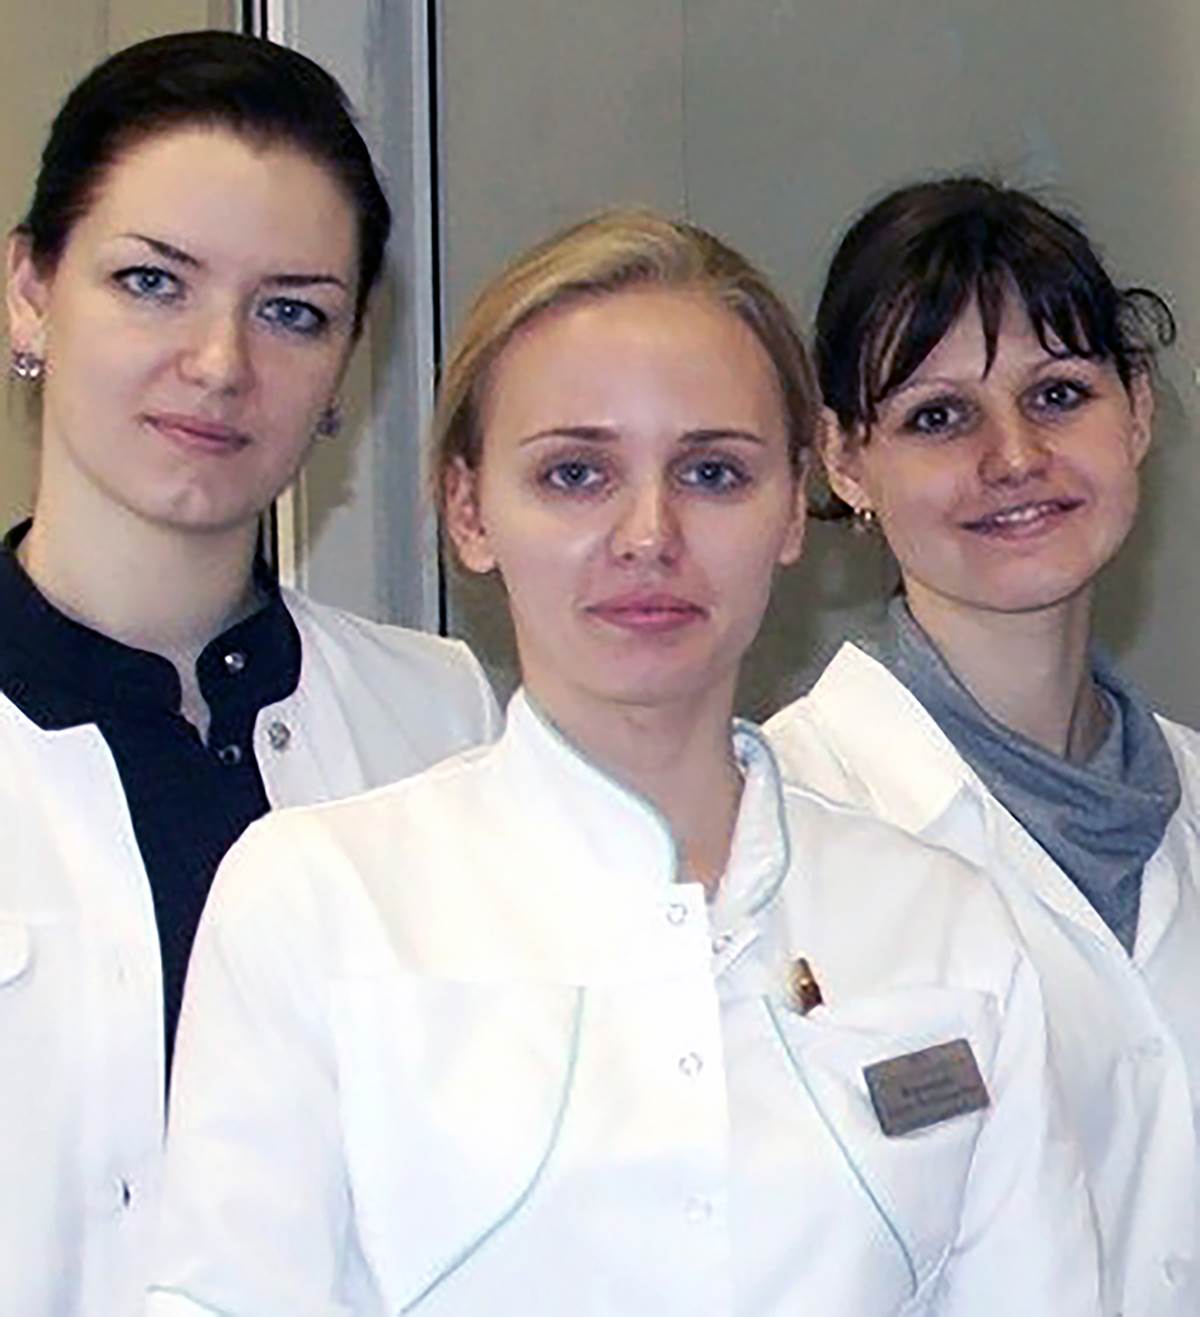  Maria Vorontsova je danas jedna od vodećih naučnica u ruskom zdravstvu. 